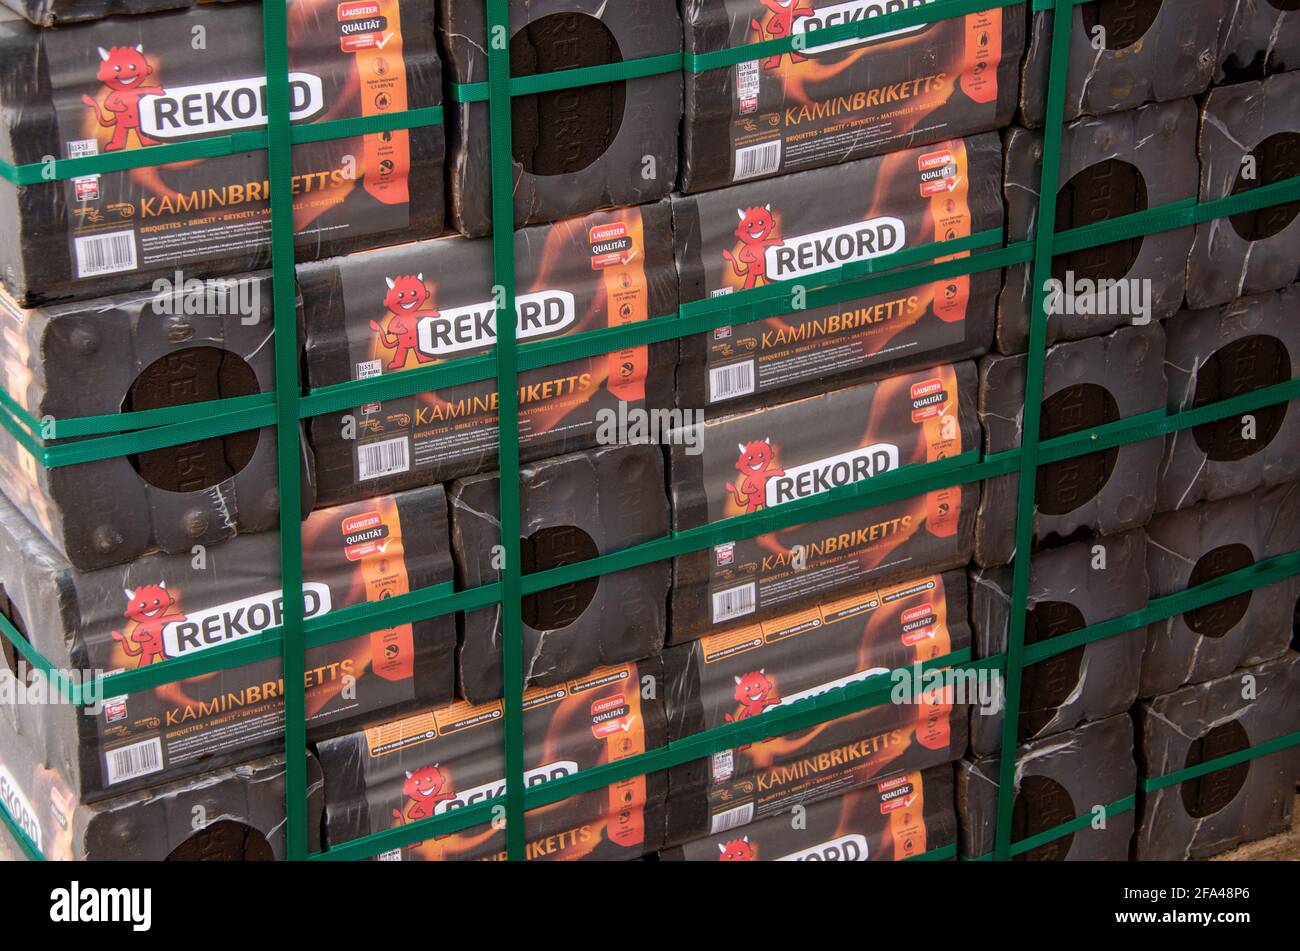 Bamberg, Allemagne - 10.4.2021. Les briquettes de charbon de bois de marque Rekord sont stockées sur une palette devant un magasin de quincaillerie. Photo de haute qualité Banque D'Images